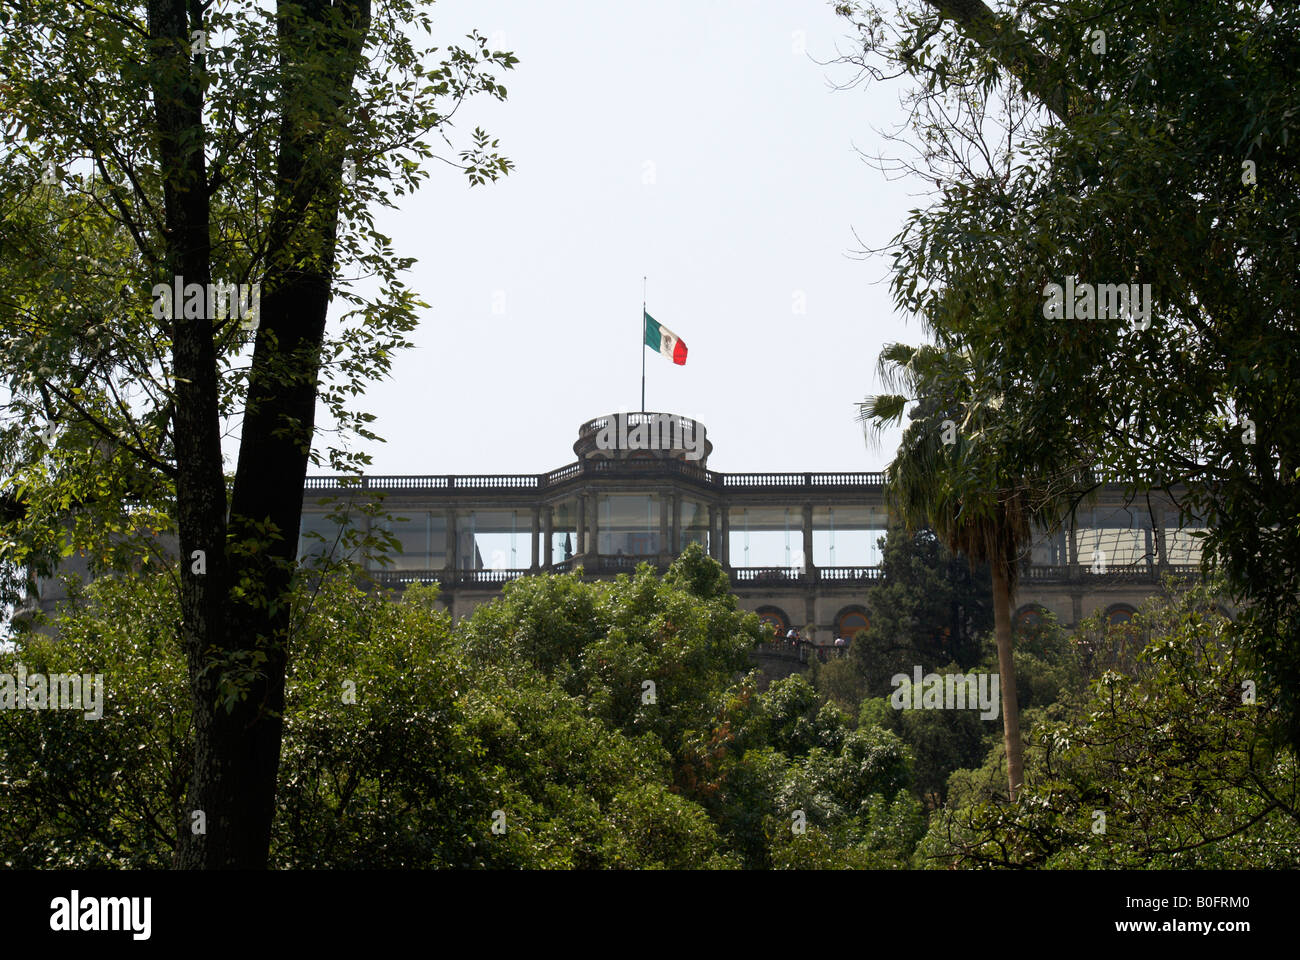 Le château de Chapultepec dans le parc de Chapultepec, Mexico. Château de Chapultepec abrite aujourd'hui le National Museum d'Hist.ory. Banque D'Images